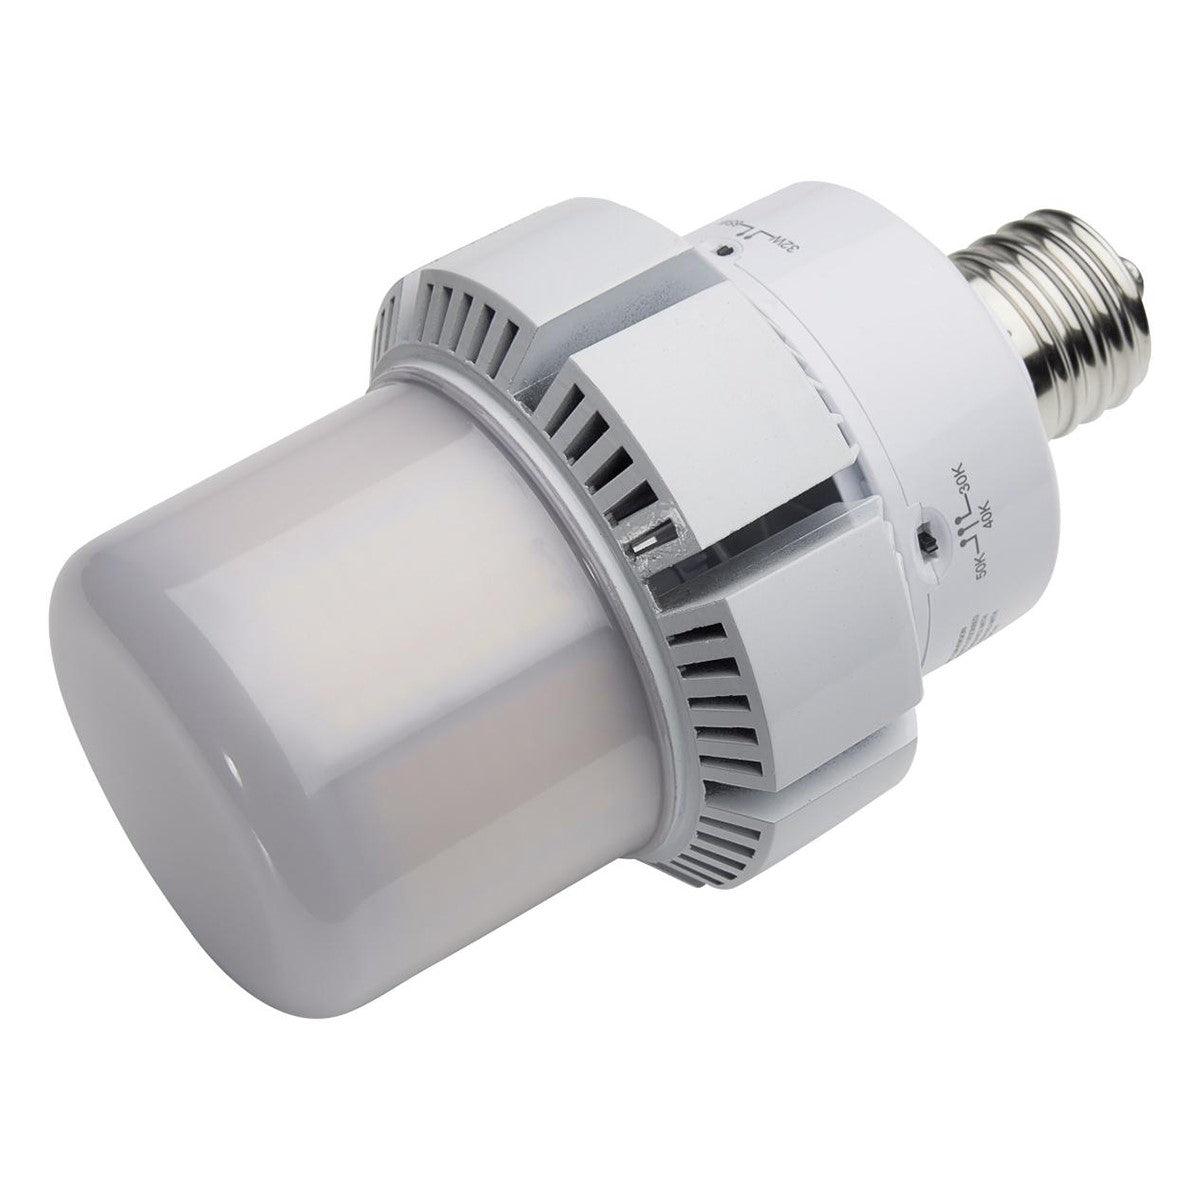 Retrofit LED Corn Bulb, 65W, 8450 Lumens, Selectable CCT, 30K/40K/50K, E39 Mogul Base, 120-277V